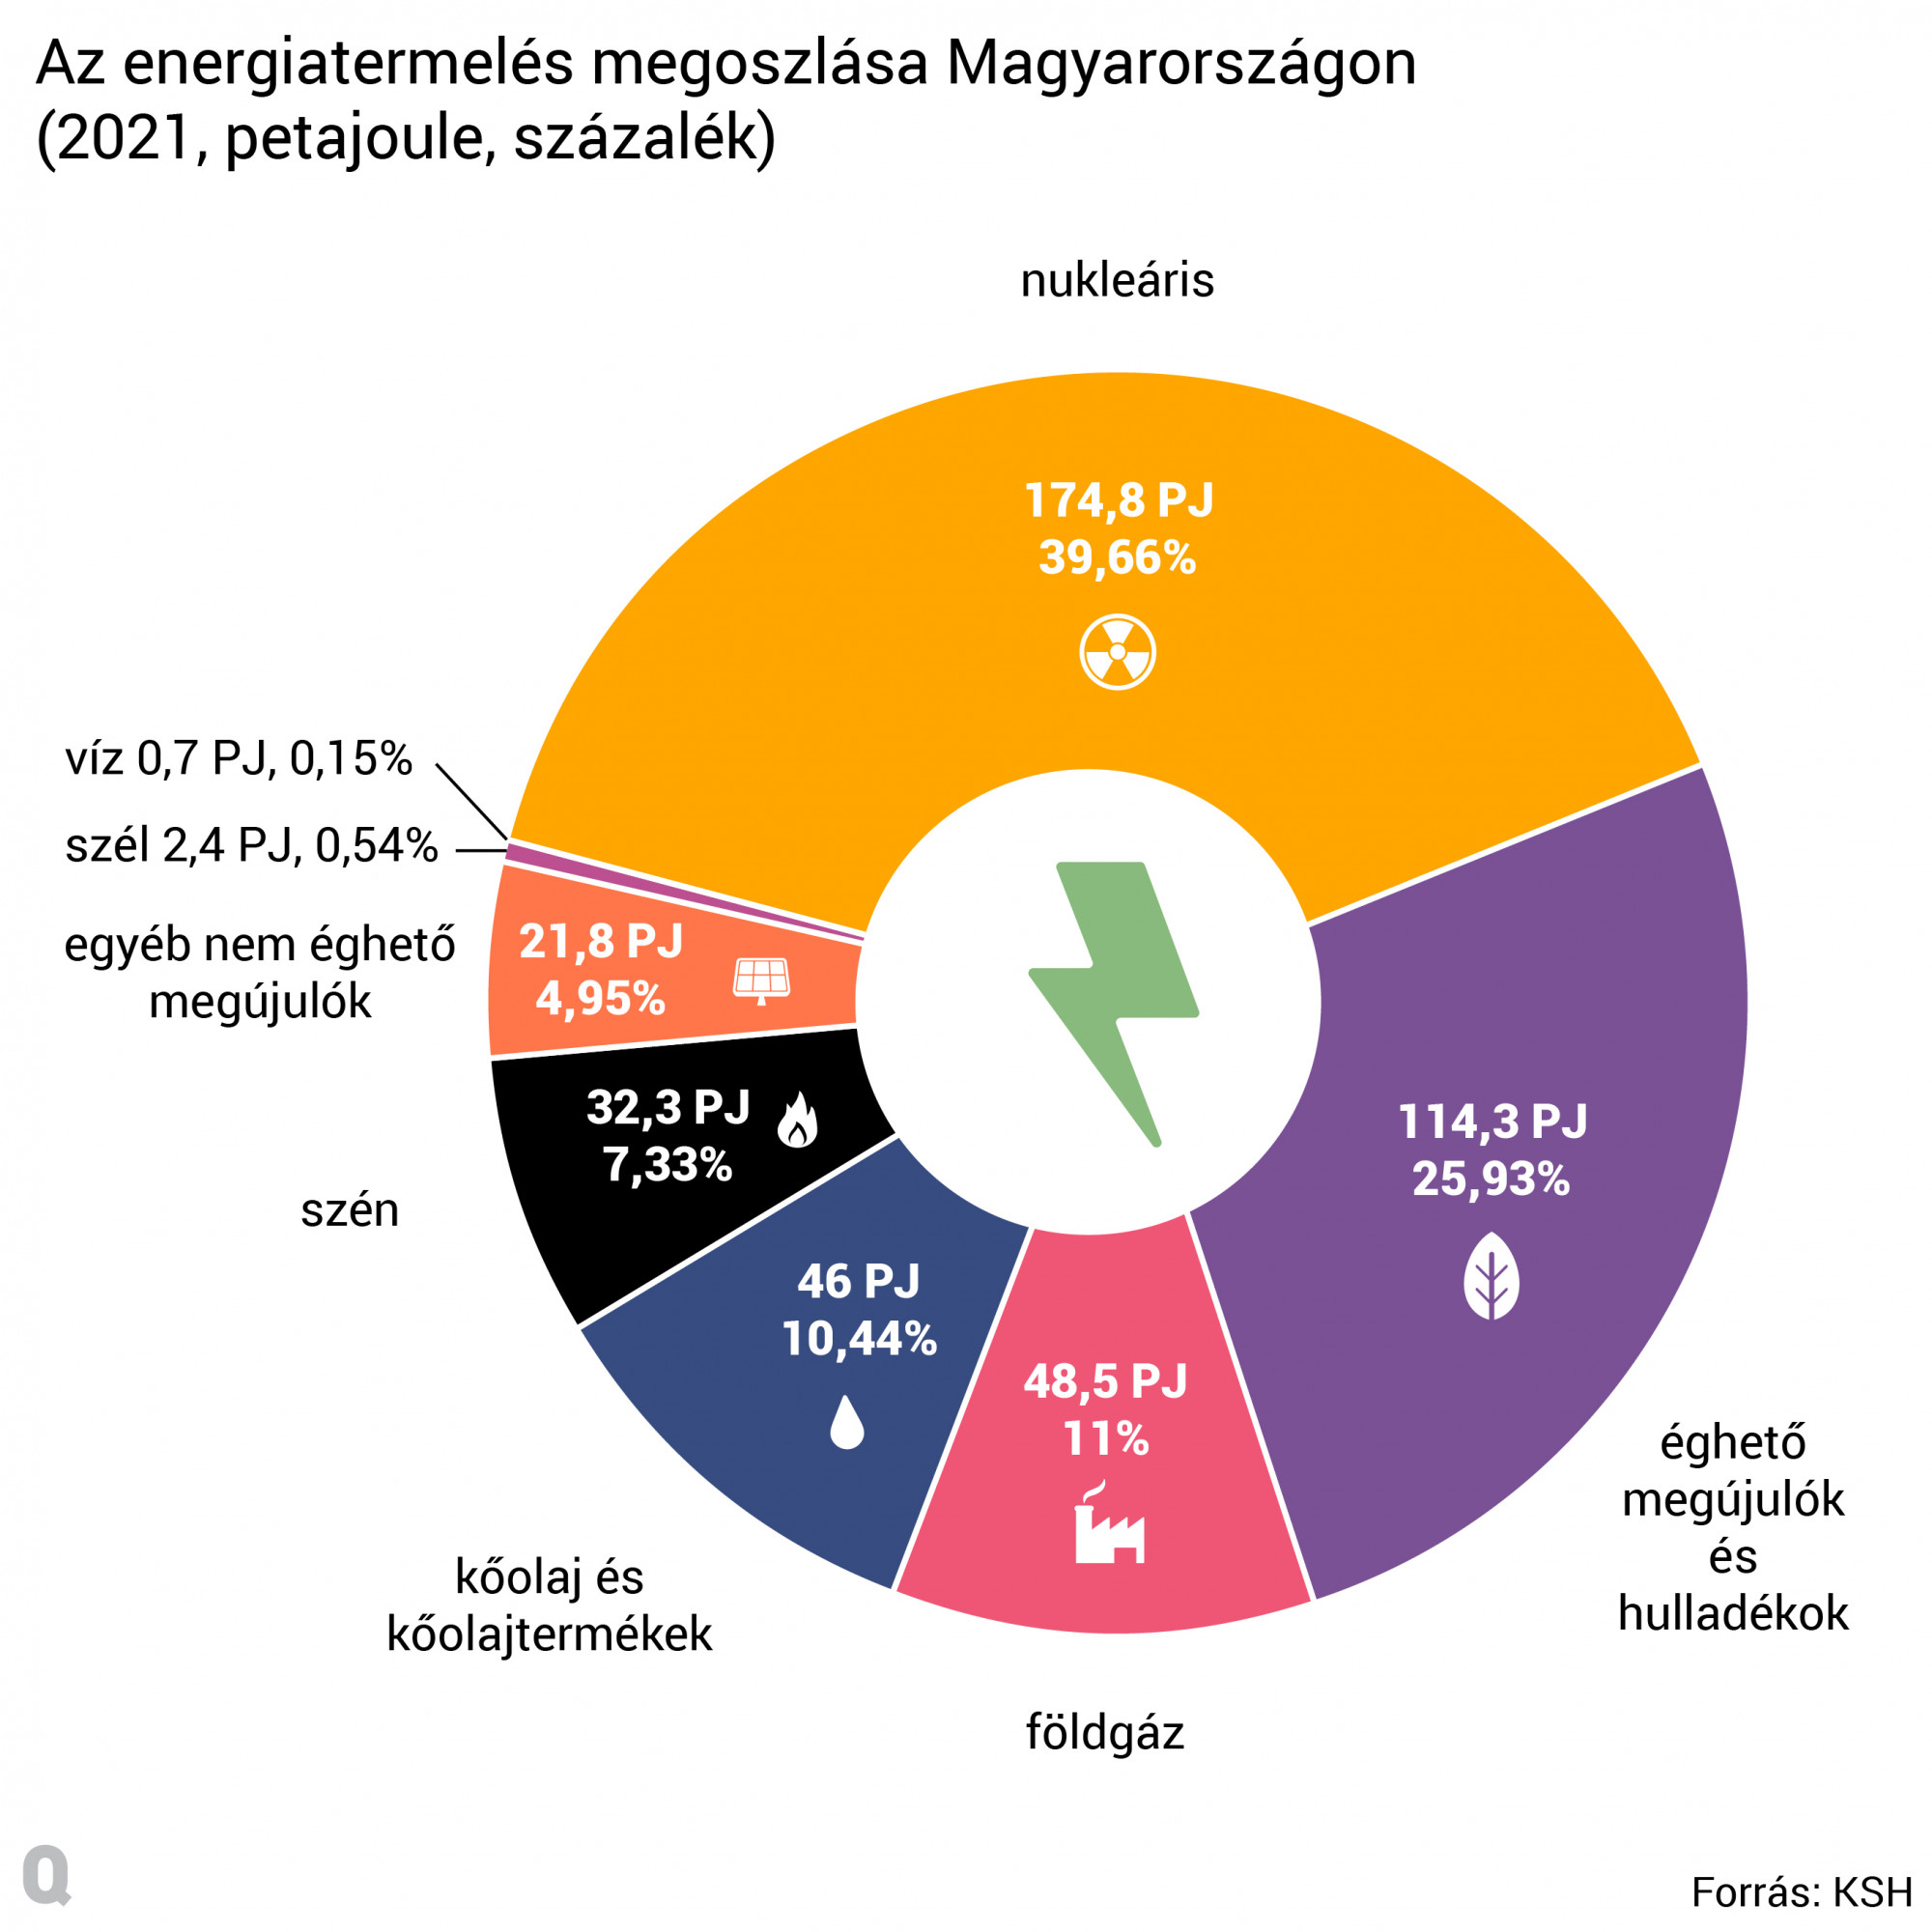 A magyarországi energiatermelés megoszlása a különböző energiahordozók között.